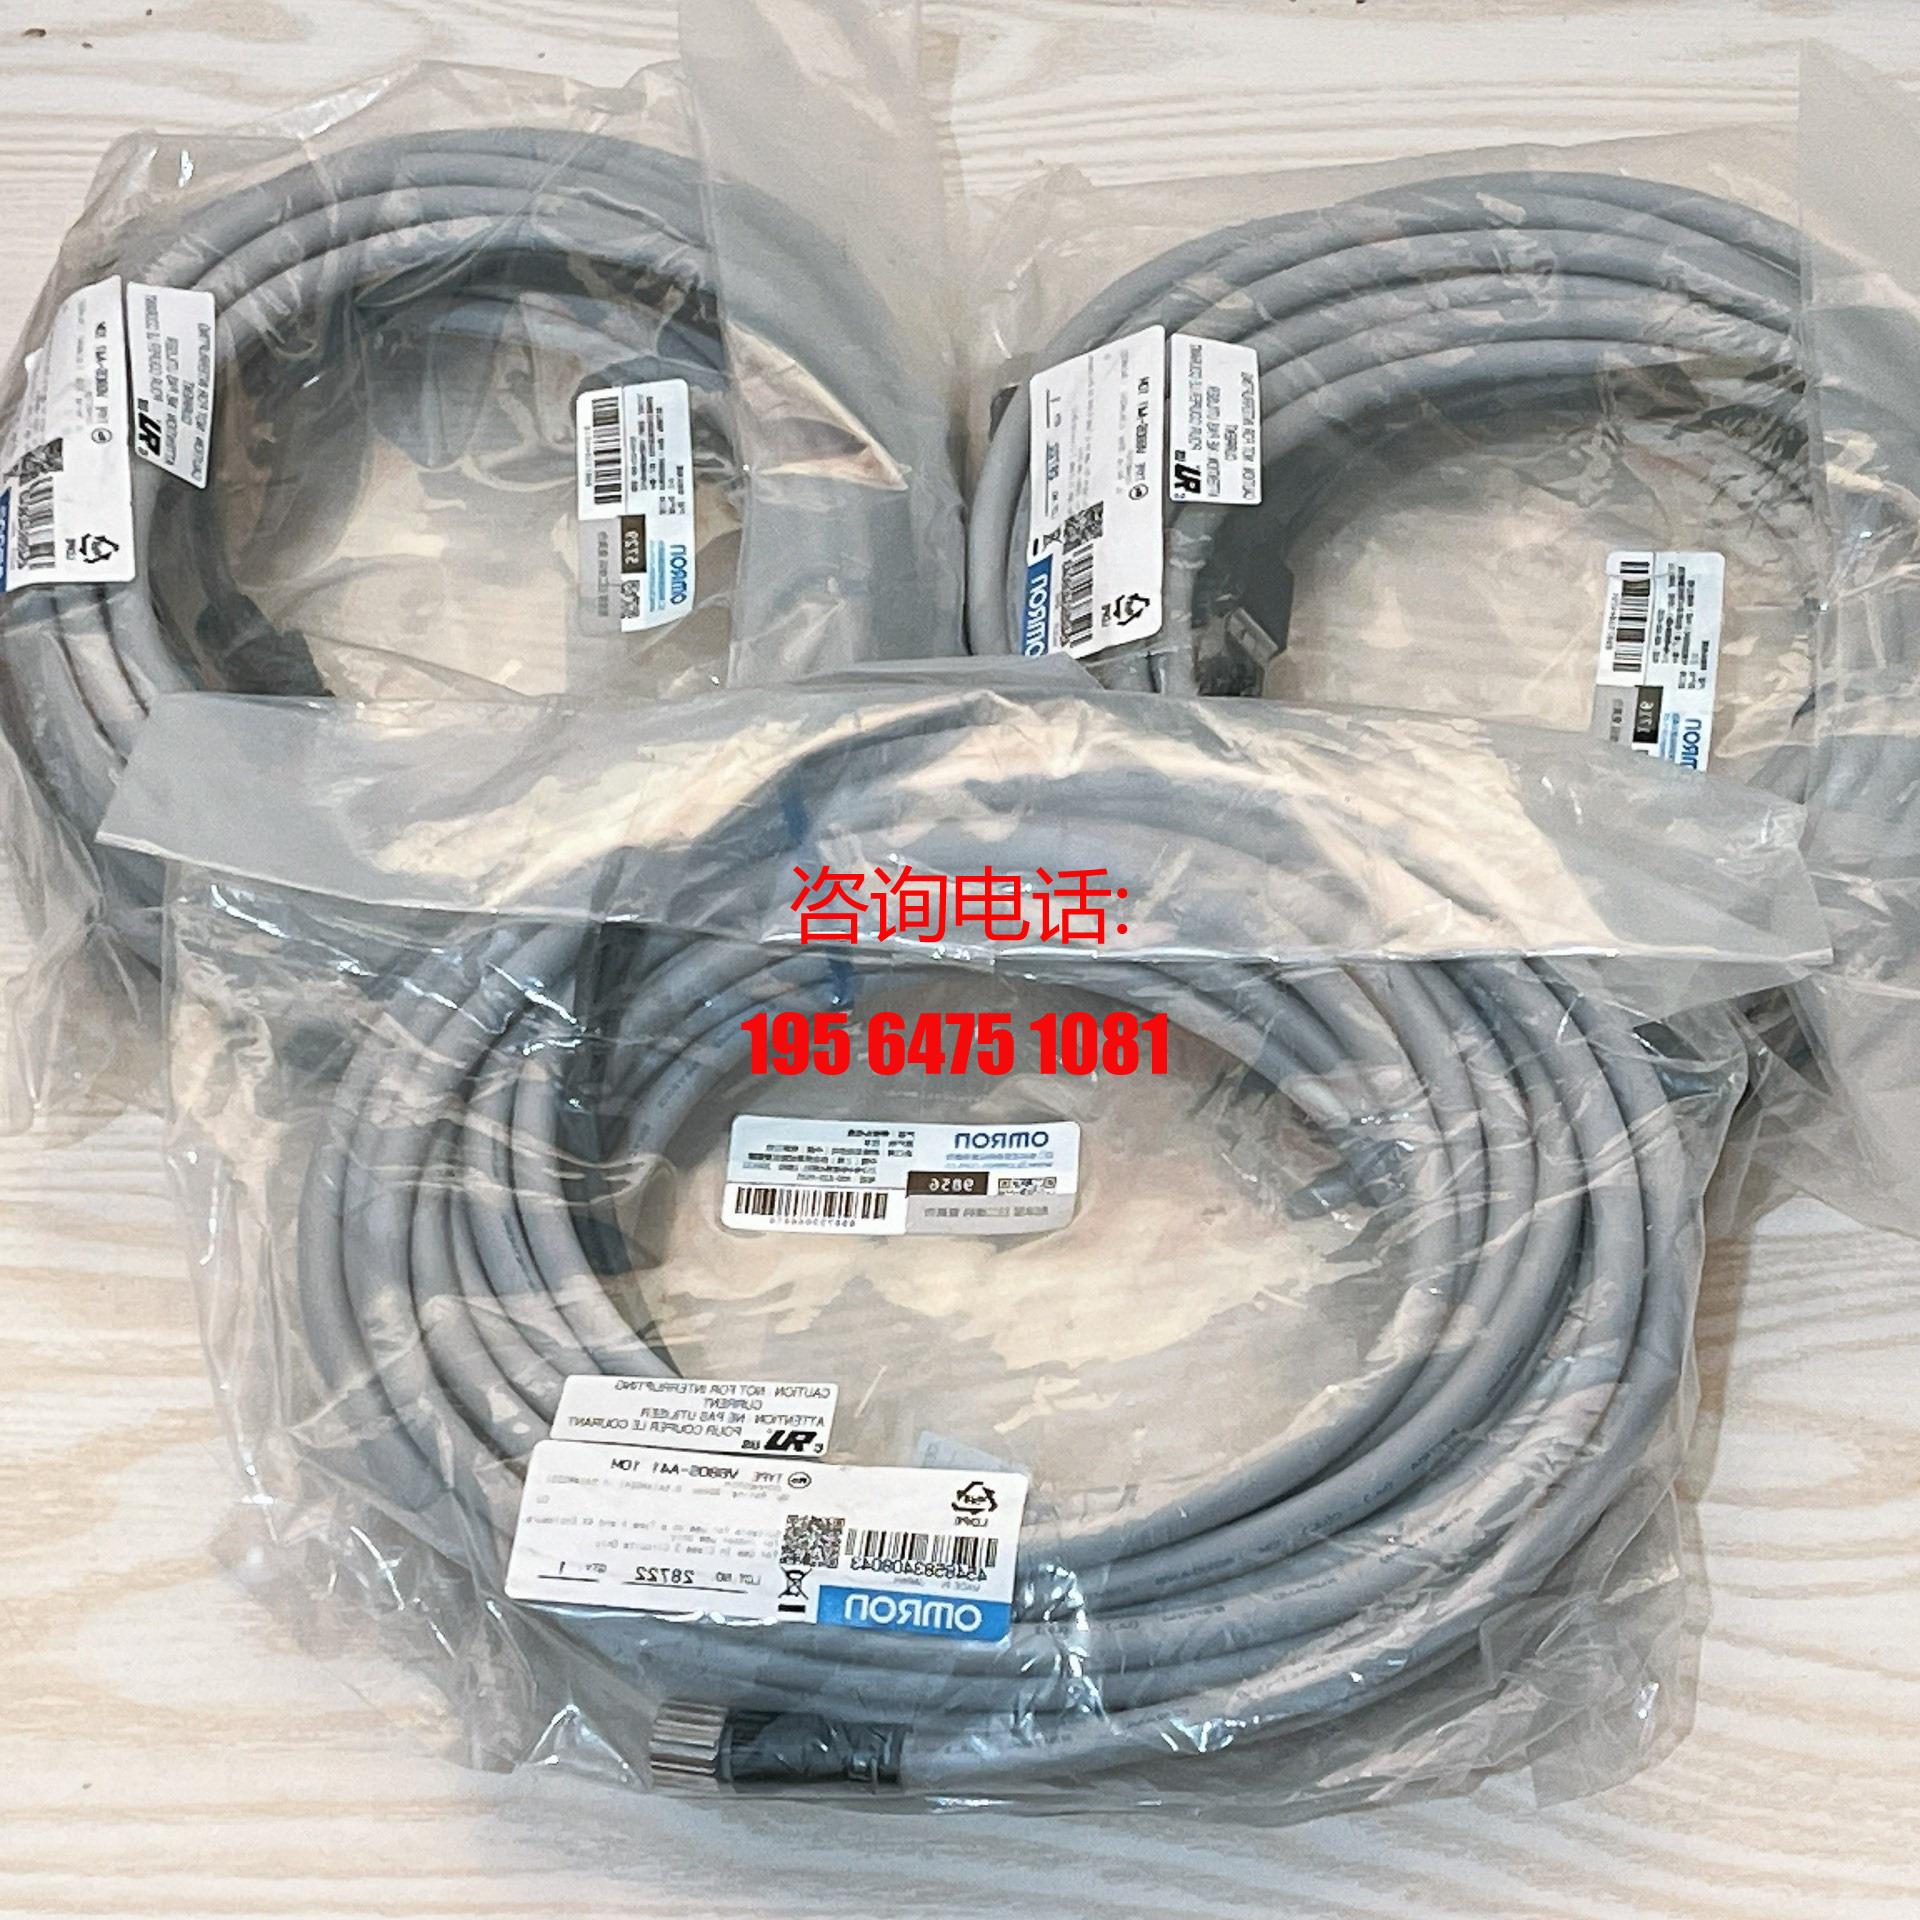 FRID控制器通信线缆 V680S-A41 10M全新全系列供应/议价